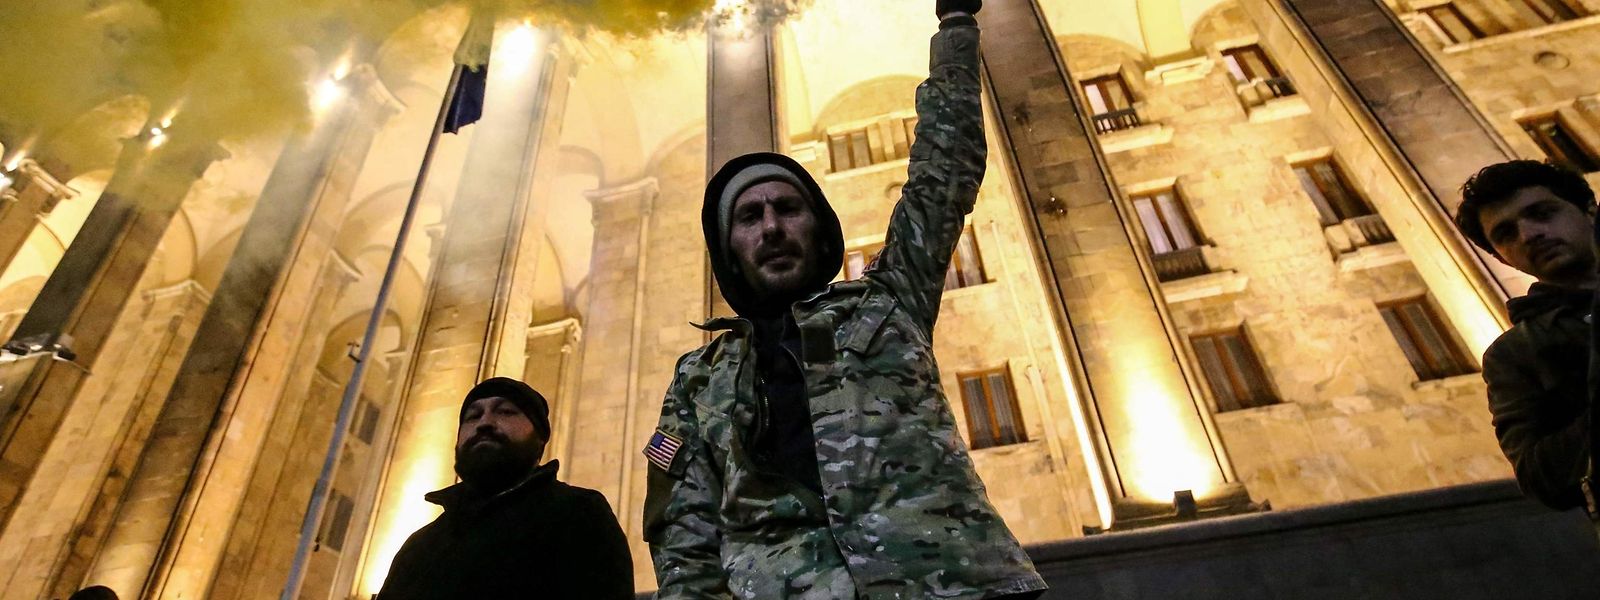 Szenen von Anfang März: Ein Demonstrant hält eine gelbe Rauchfackel vor dem georgischen Parlament in Tiflis. Die georgische Polizei ging mit Tränengas und Wasserwerfern gegen Demonstranten vor, als Tausende von Demonstranten in der Hauptstadt gegen ein umstrittenes Gesetz über "ausländische Agenten" auf die Straße gingen.